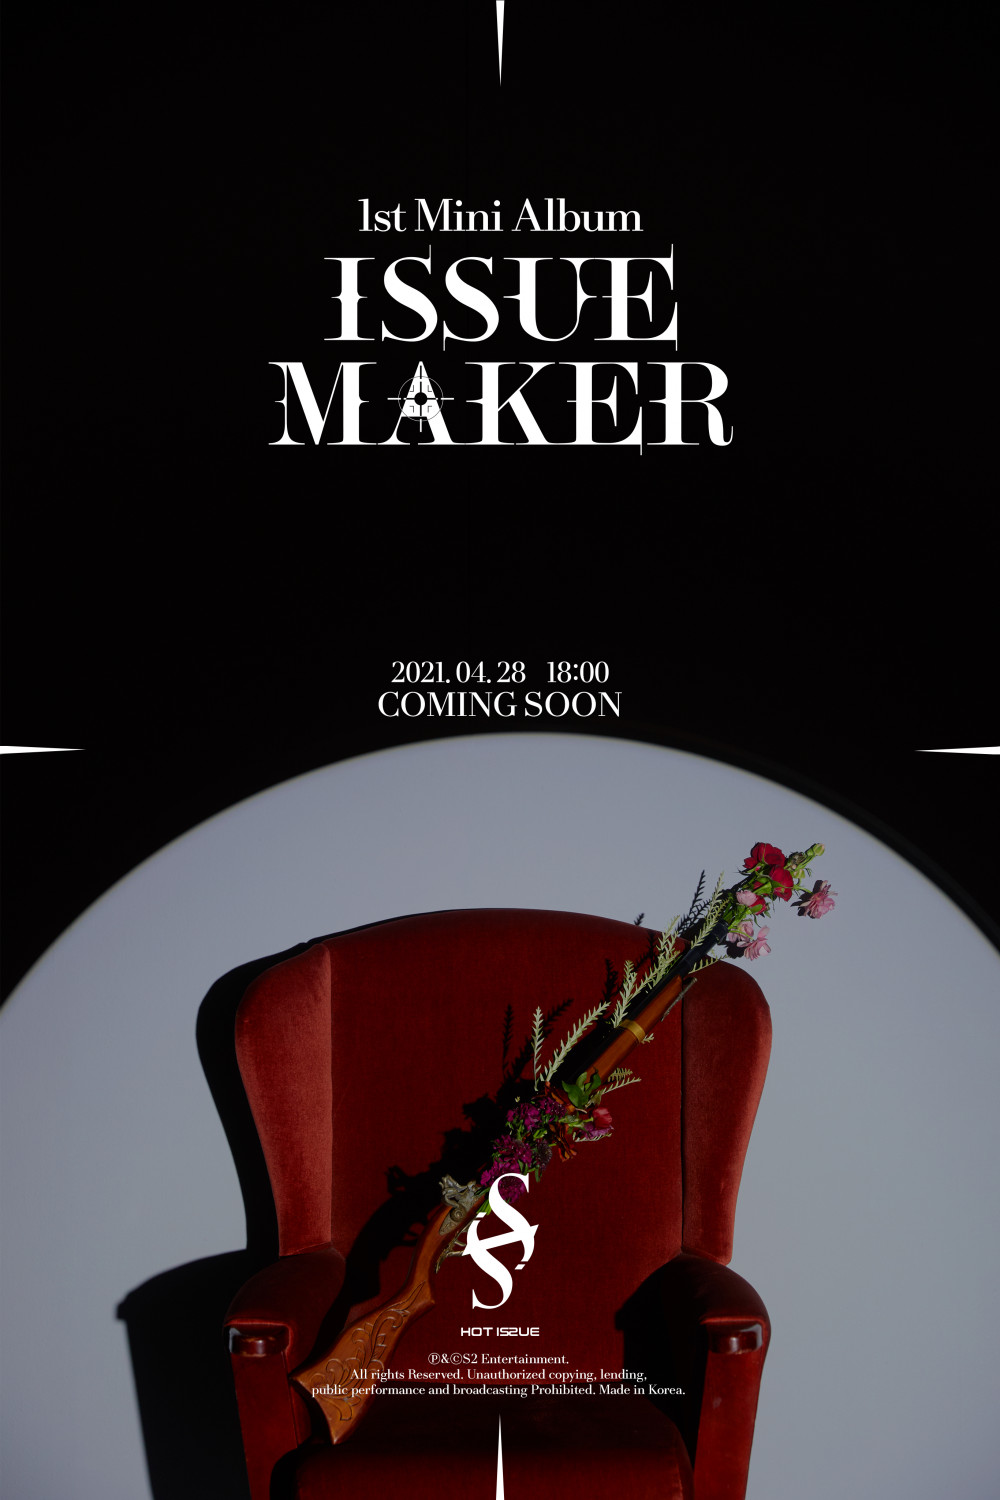 [Дебют] HOT ISSUE альбом "Issue Maker": музыкальный клип "GRATATA"